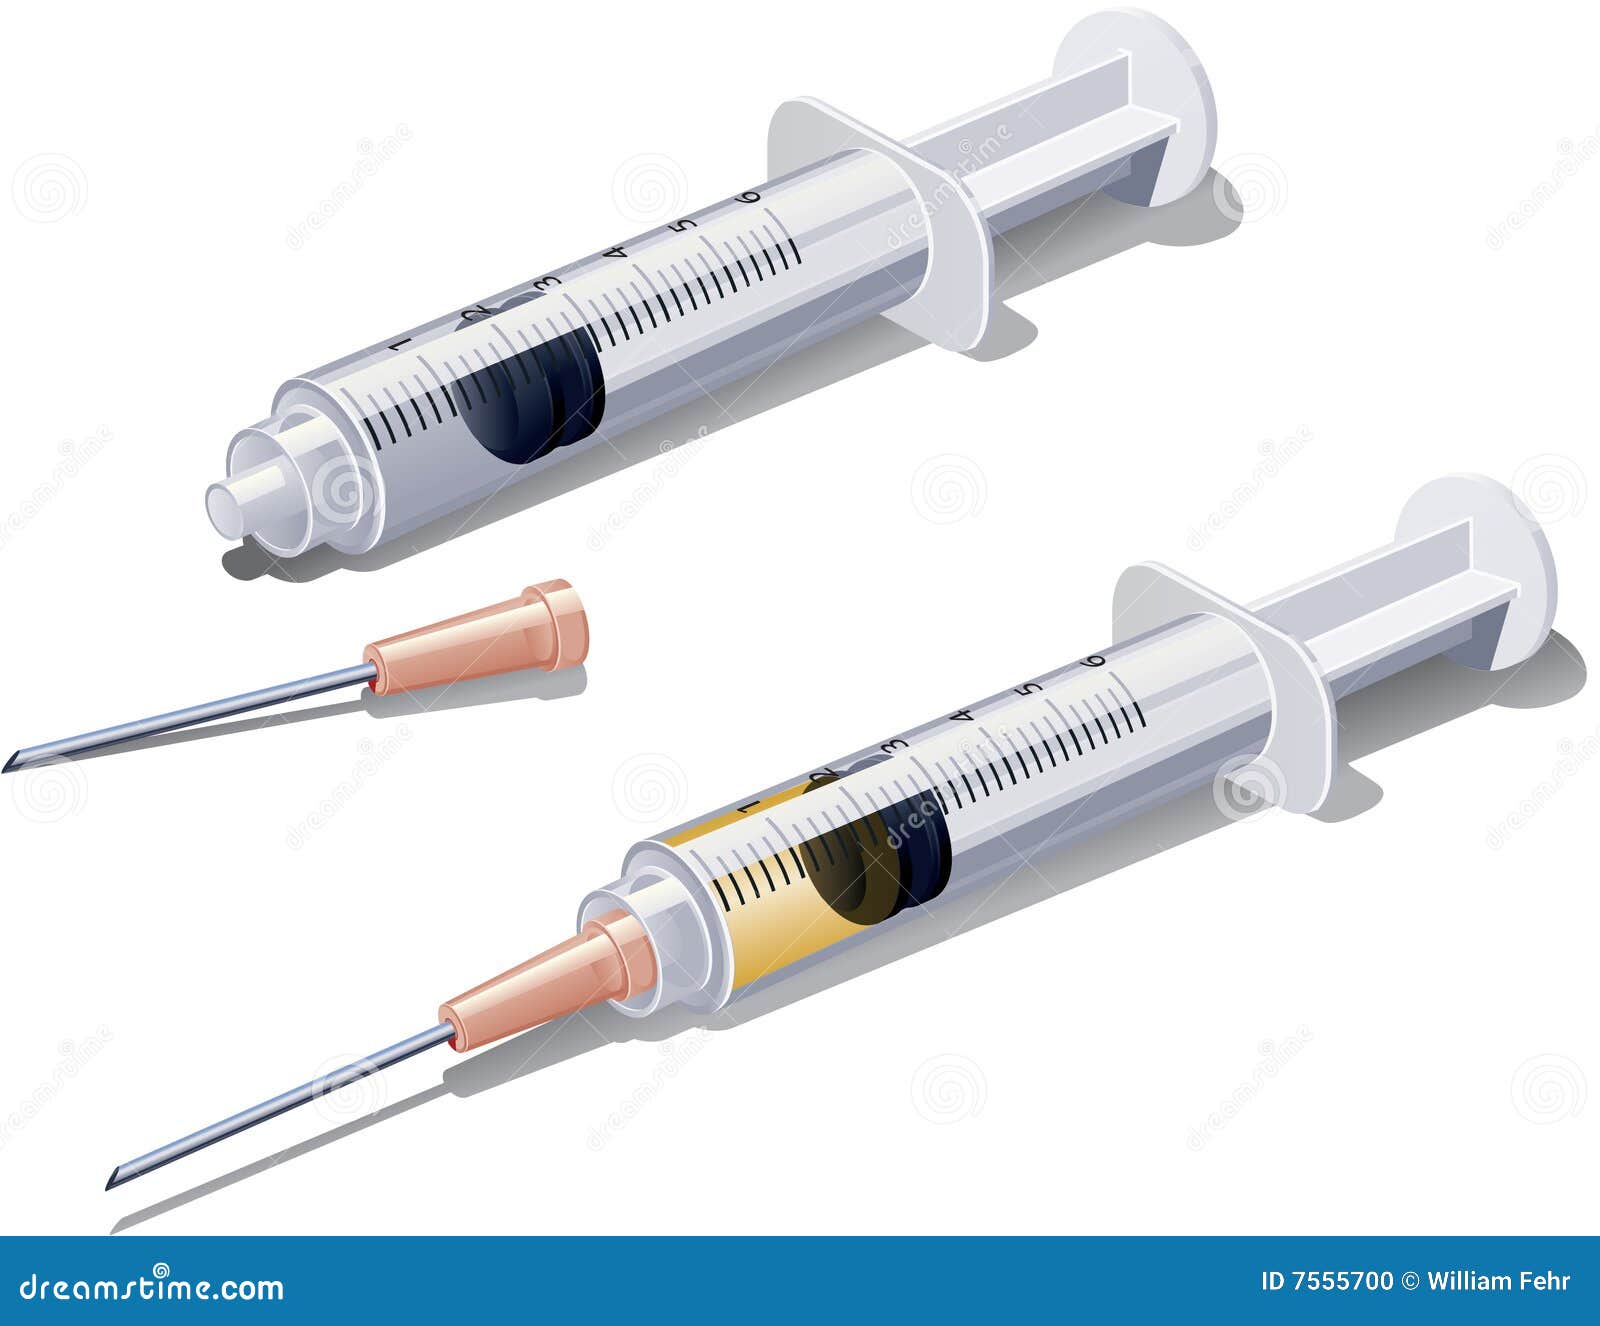 syringe or hypodermic needle